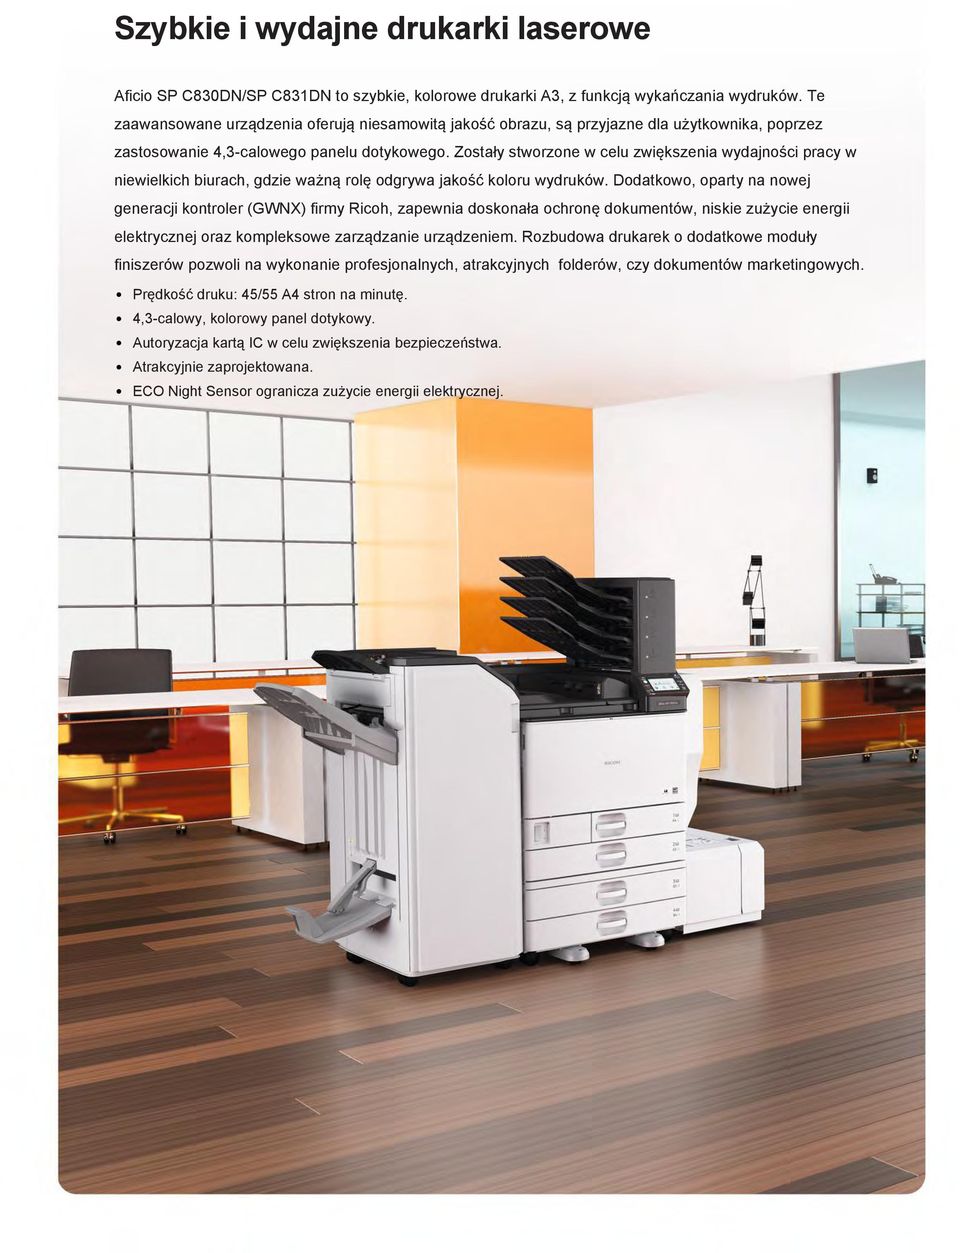 Zostały stworzone w celu zwiększenia wydajności pracy w niewielkich biurach, gdzie ważną rolę odgrywa jakość koloru wydruków.